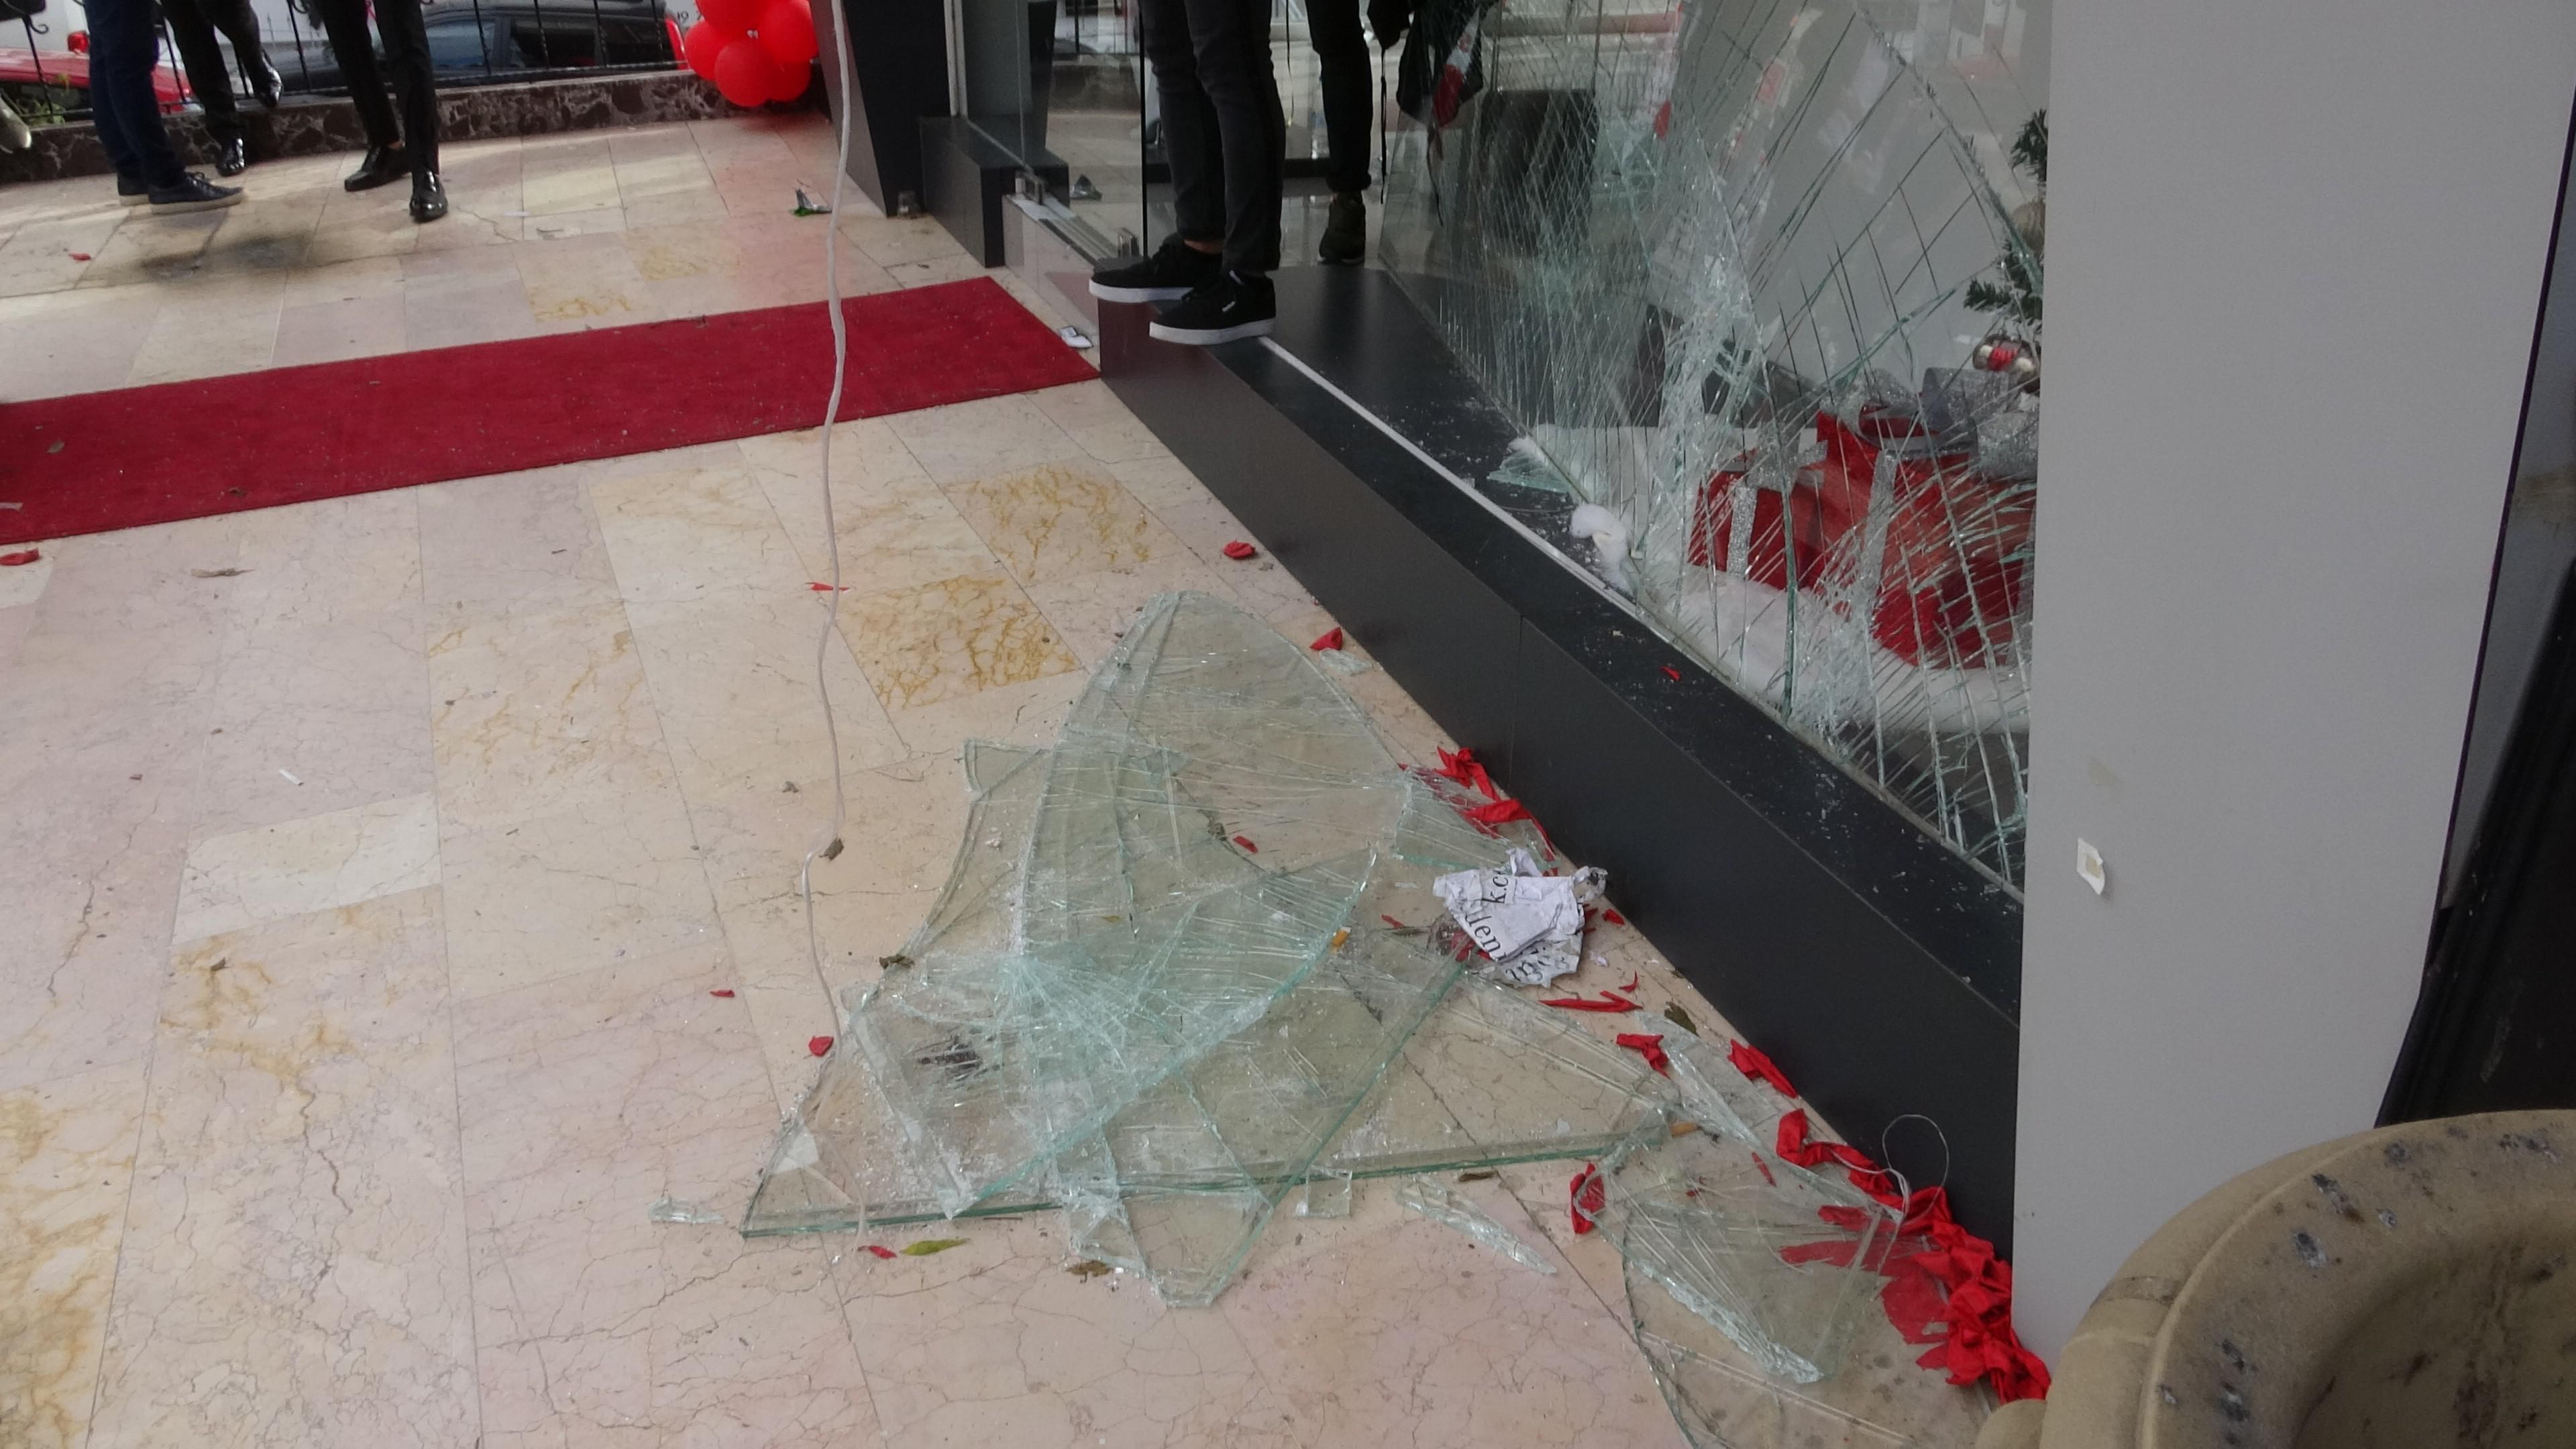 İstanbul Maltepede alışveriş çılgınlığı olaylı bitti